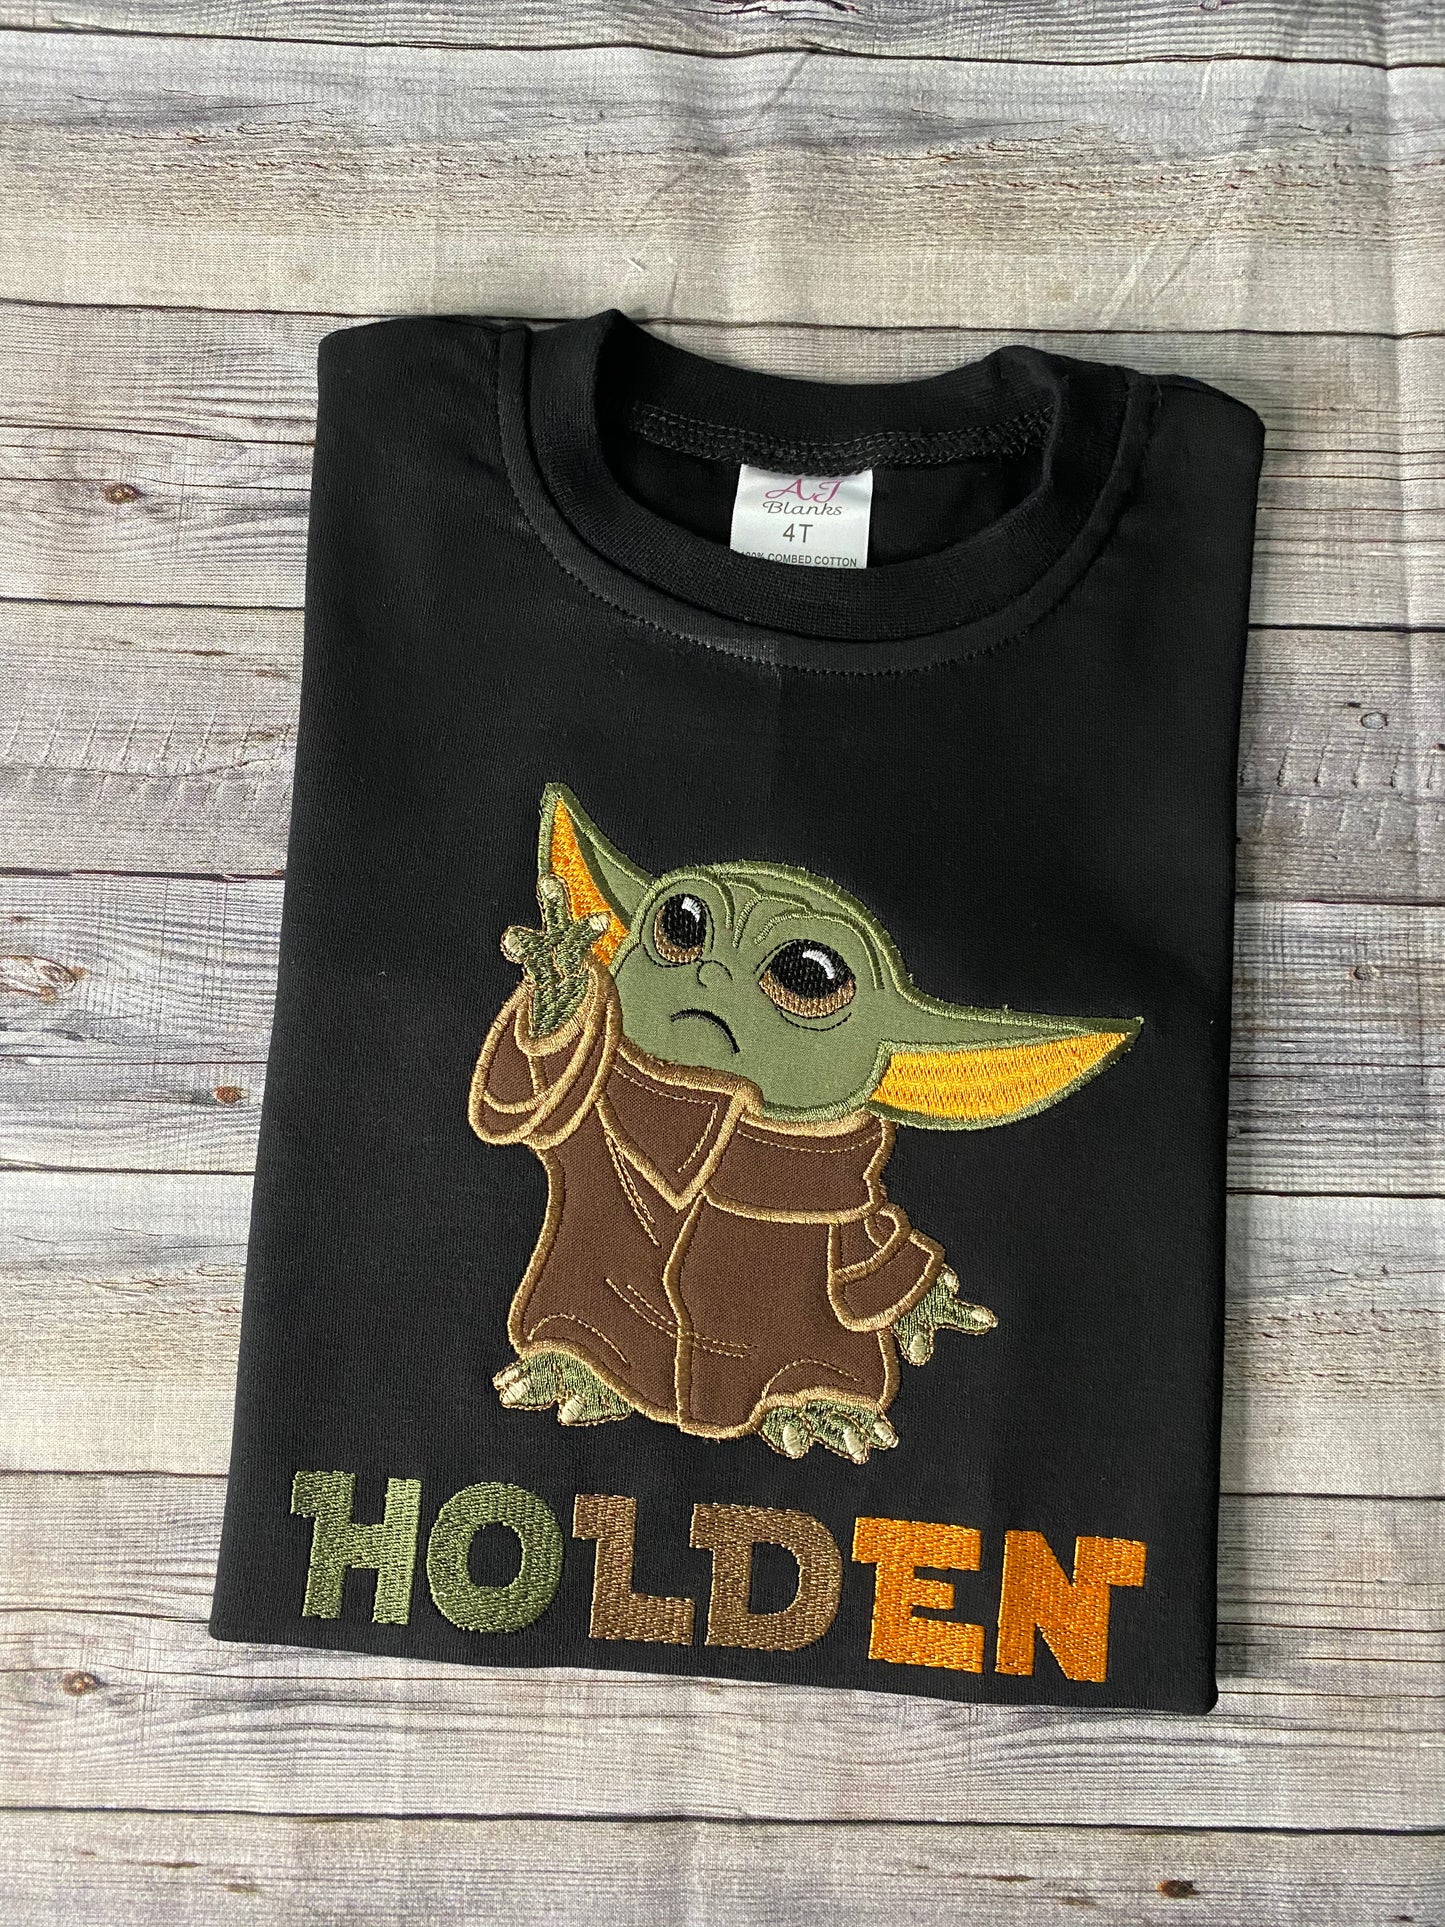 Baby Yoda shirt- Star Wars